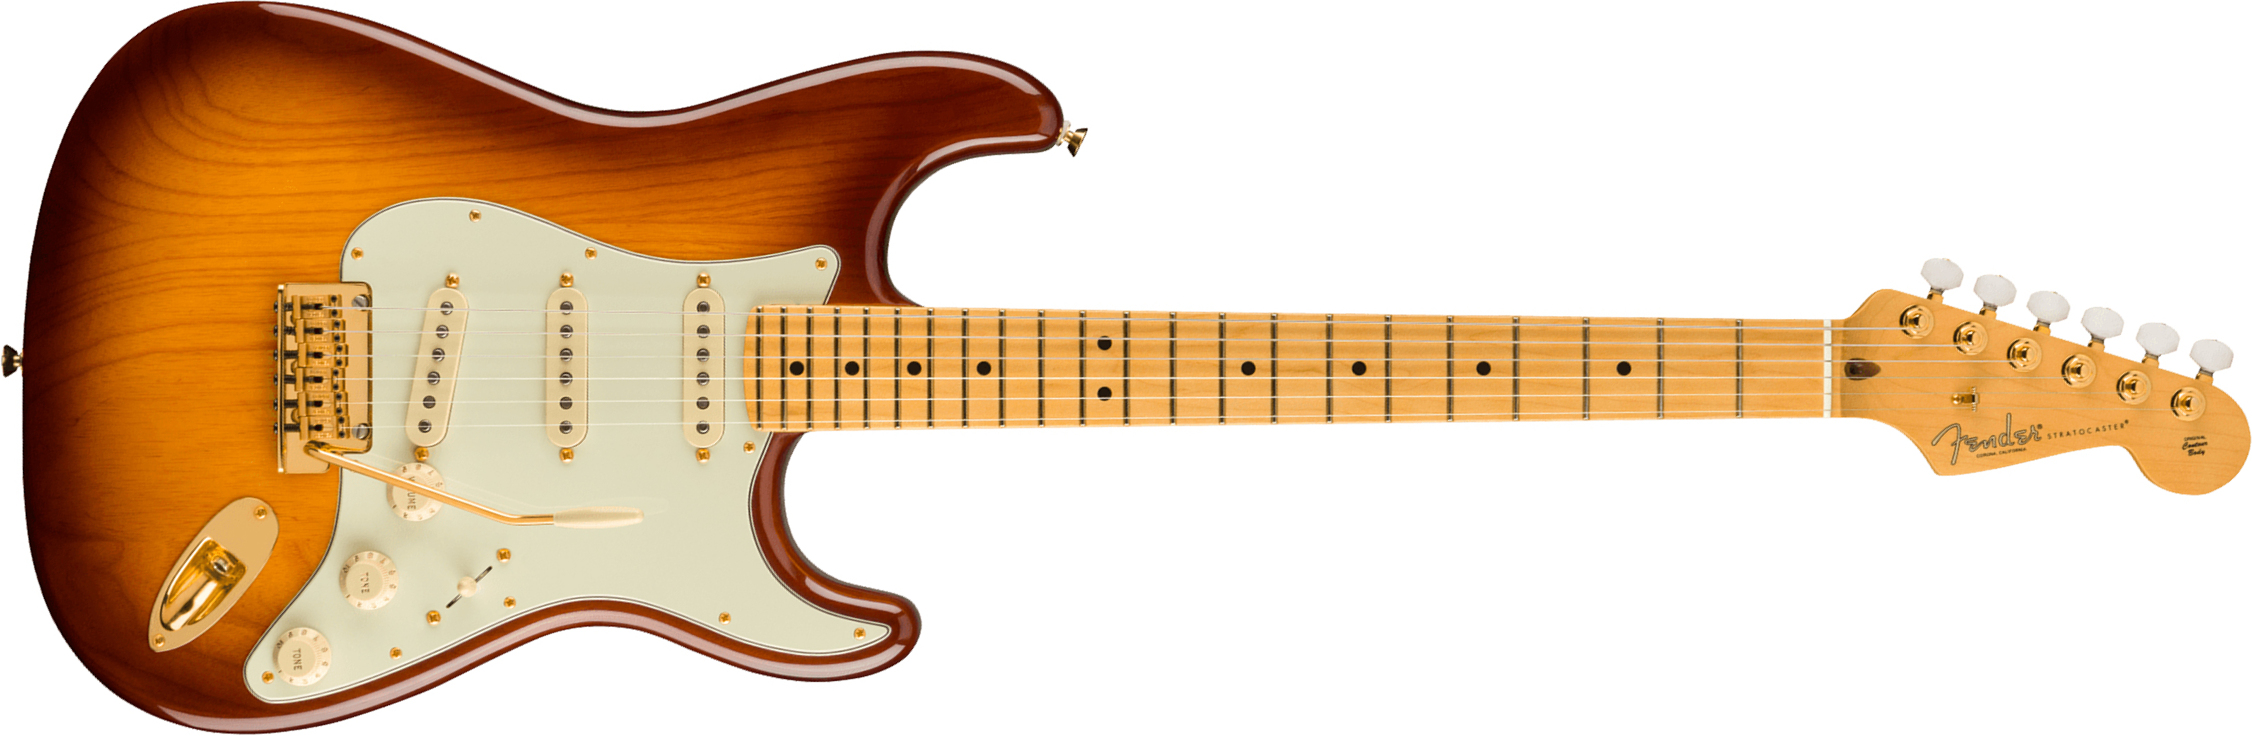 Fender Strat 75th Anniversary Commemorative Ltd Usa Mn +etui - 2-color Bourbon Burst - E-Gitarre in Str-Form - Main picture